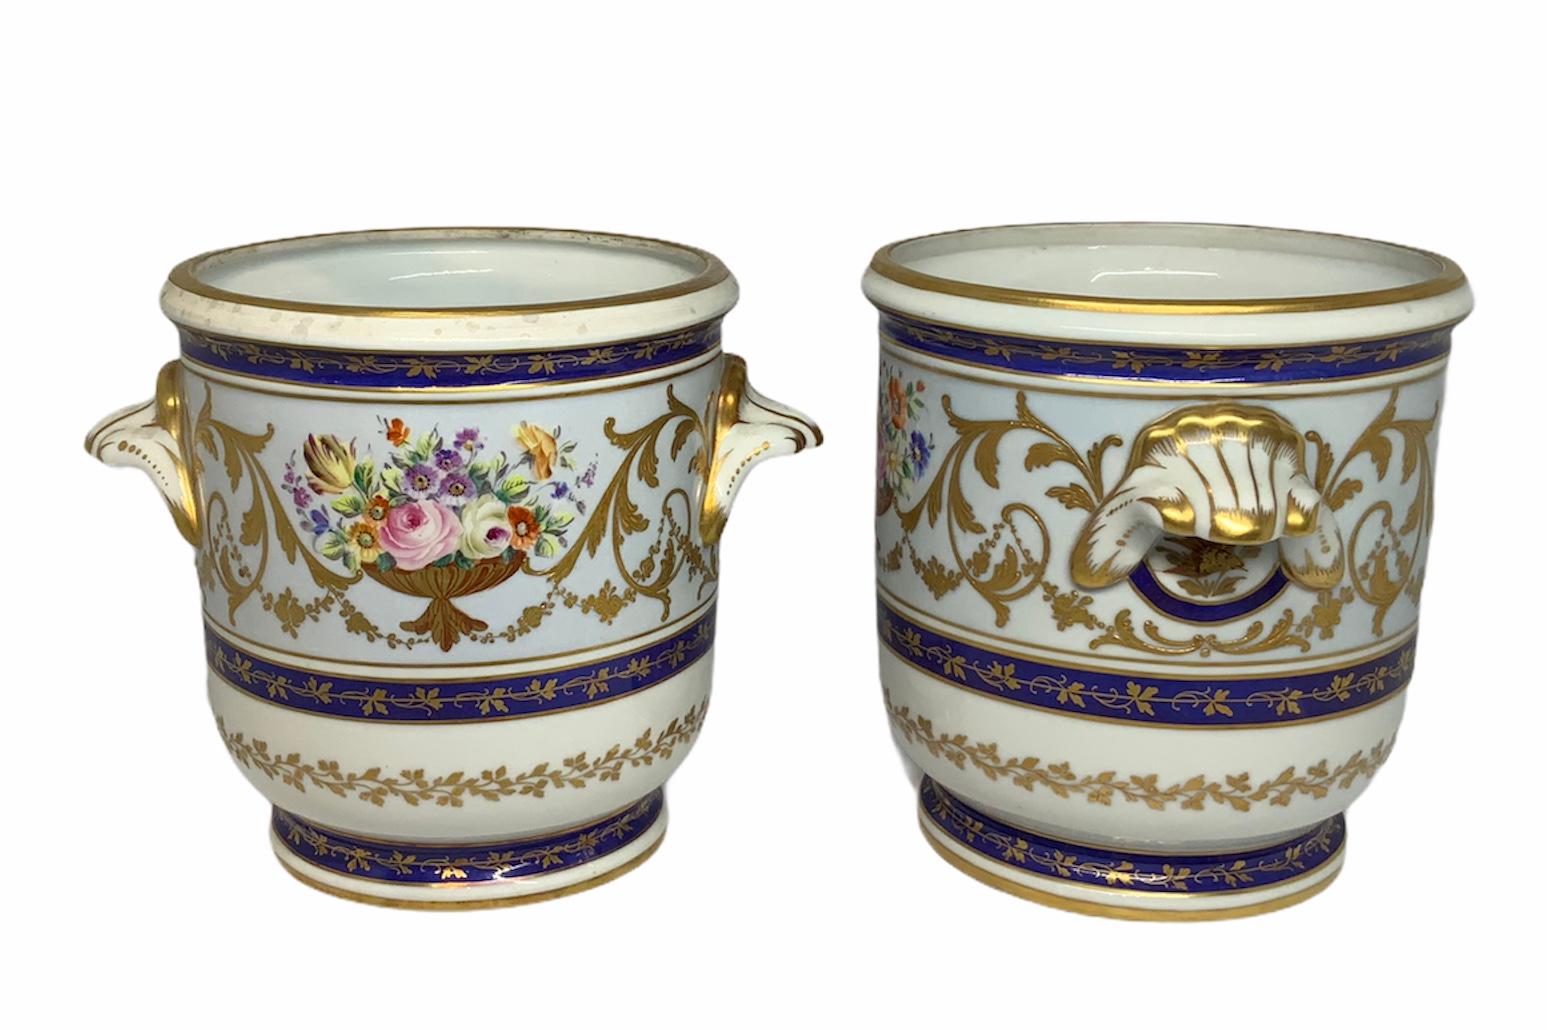 Cet ensemble de cache-pots en porcelaine peints à la main représente une décoration dans une pièce centrale dorée d'un arrangement de fleurs à l'avant et d'acanthes dorées poussant le long des côtés du diamètre du cache-pot. De plus, trois anneaux